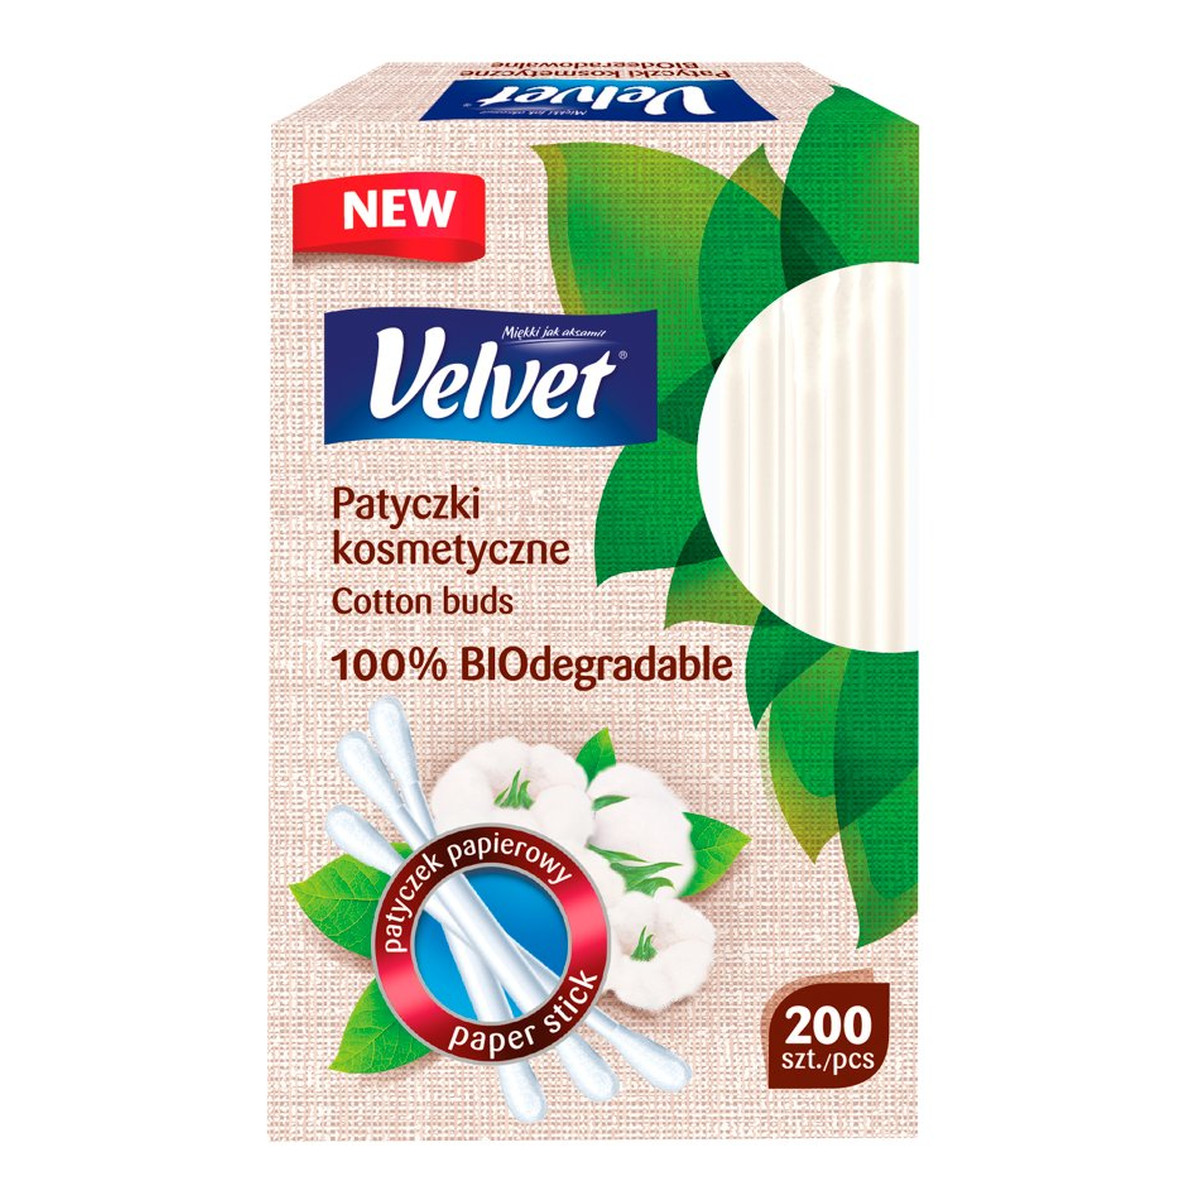 Velvet Patyczki kosmetyczne biodegradowalne 200szt